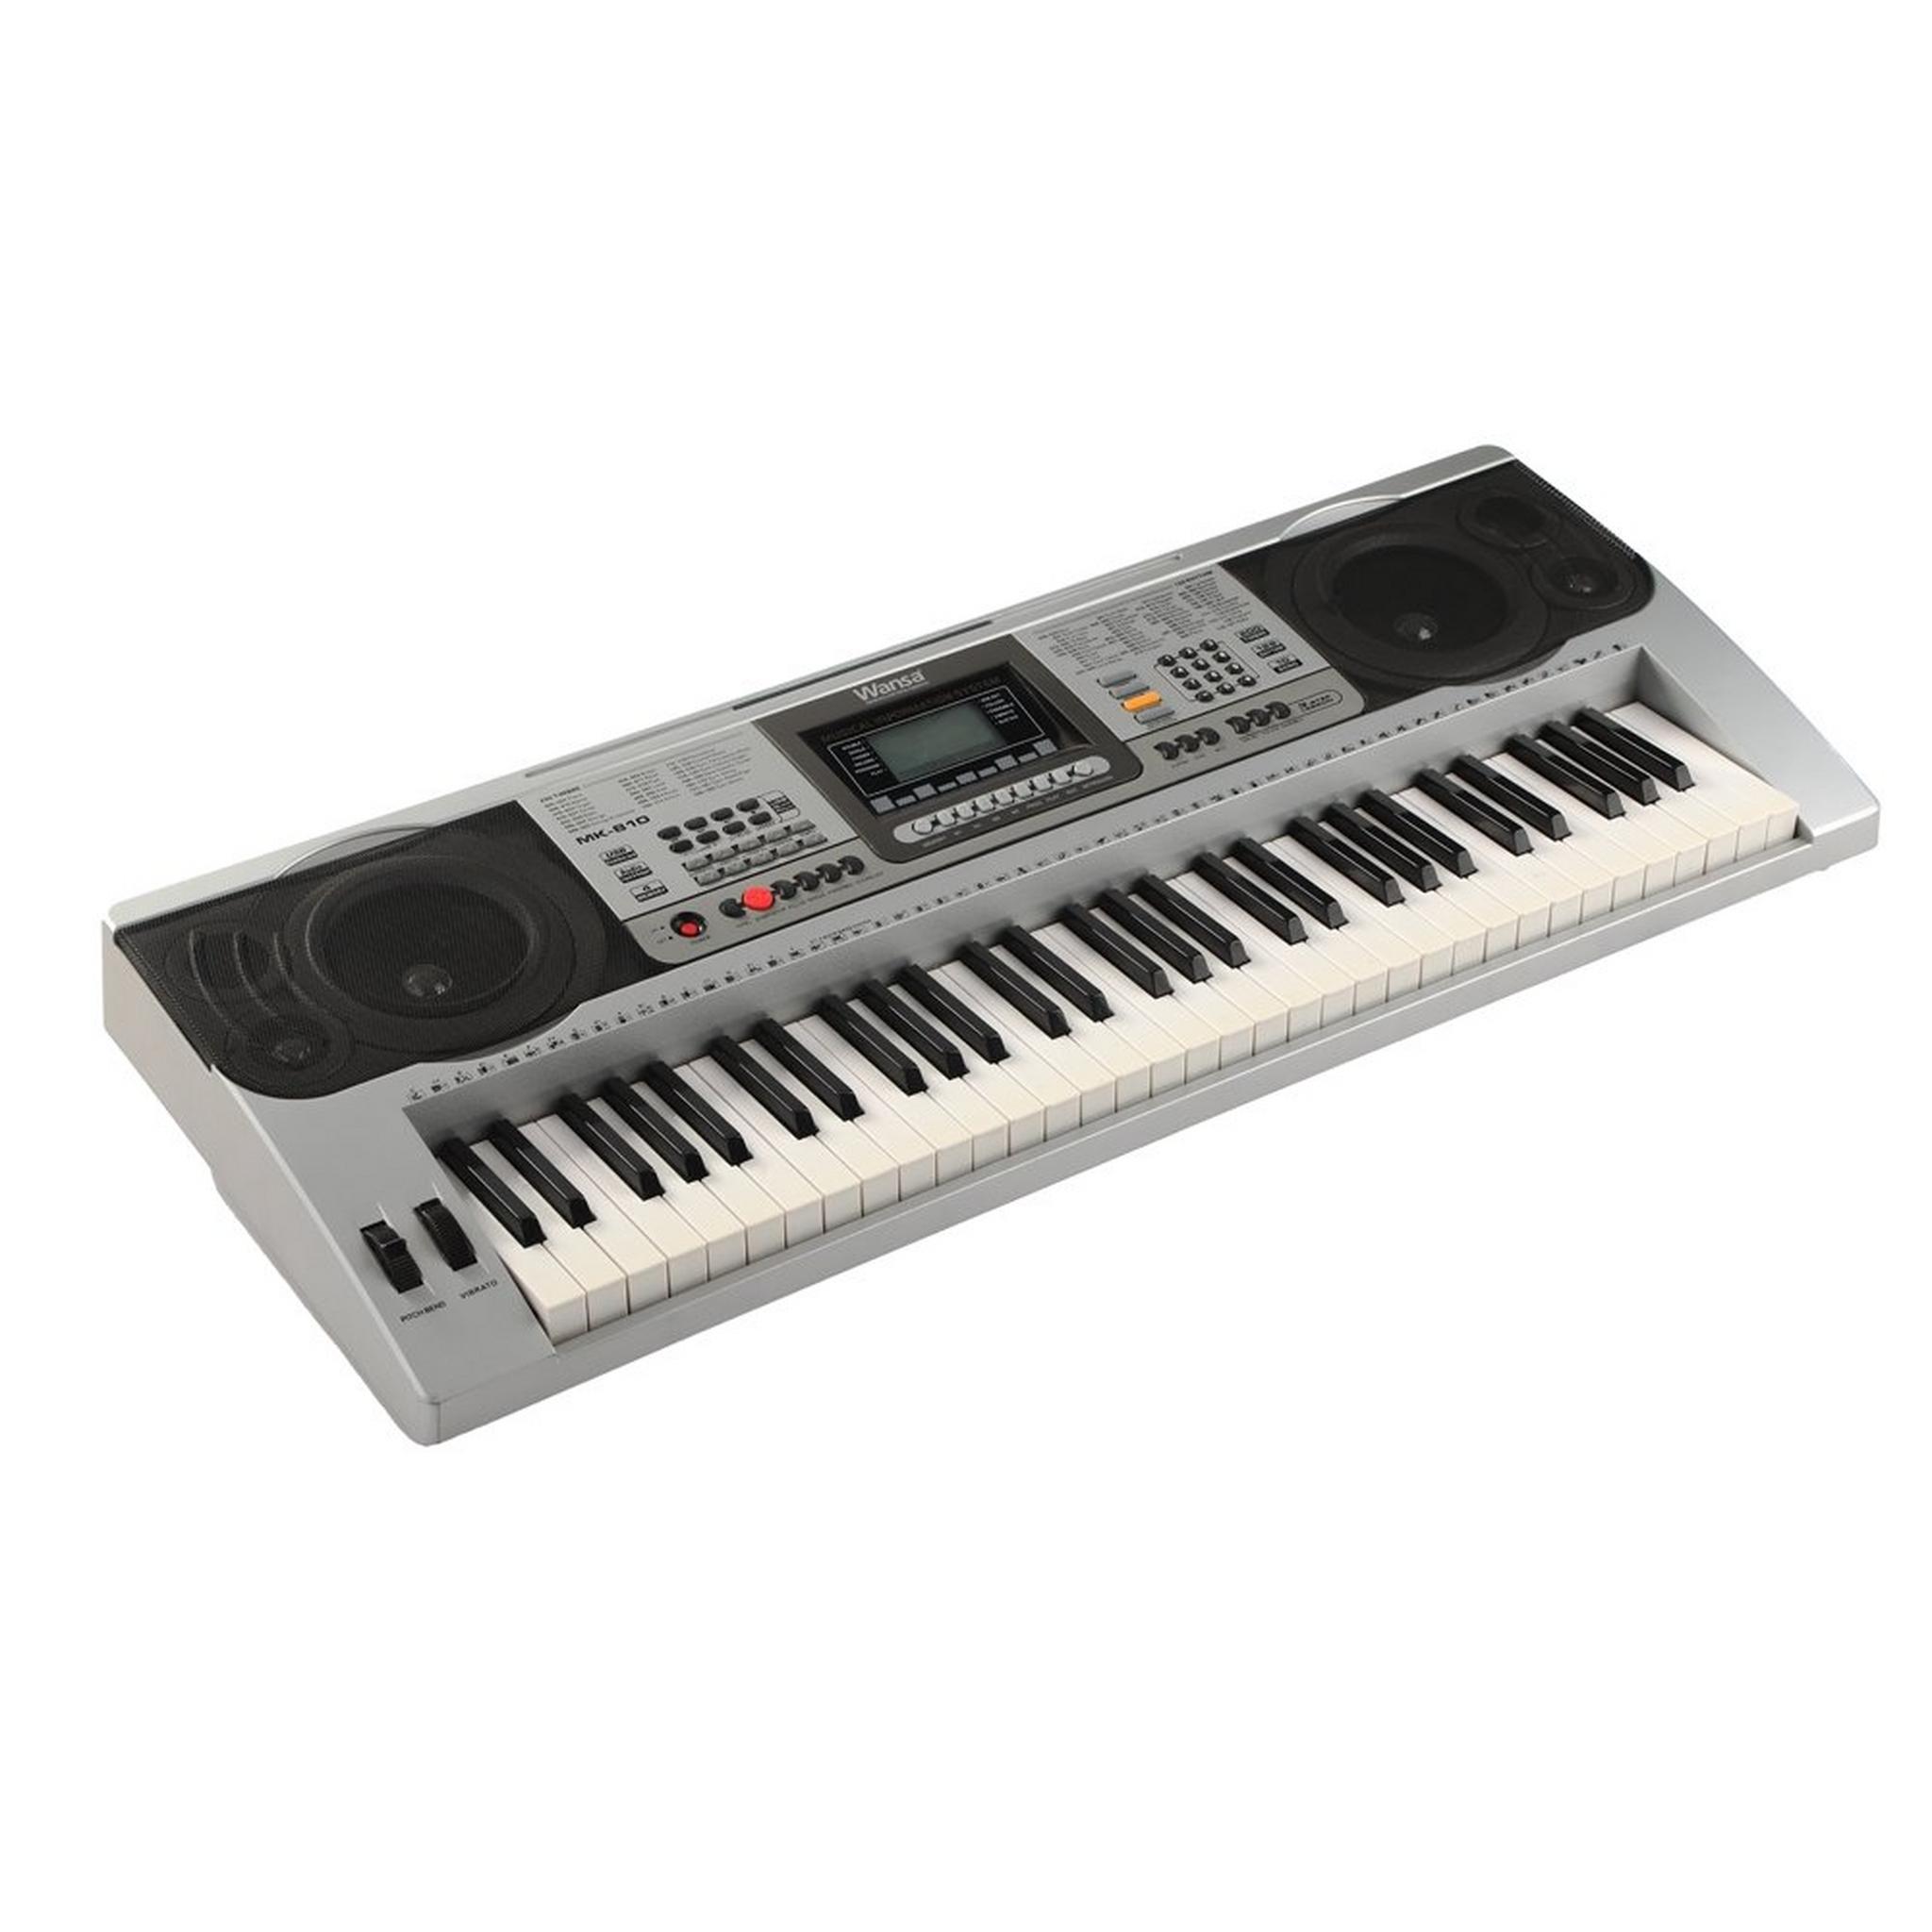 لوحة مفاتيح موسيقية من ونسا ٦١ مفتاح – فضي - (MK-810)